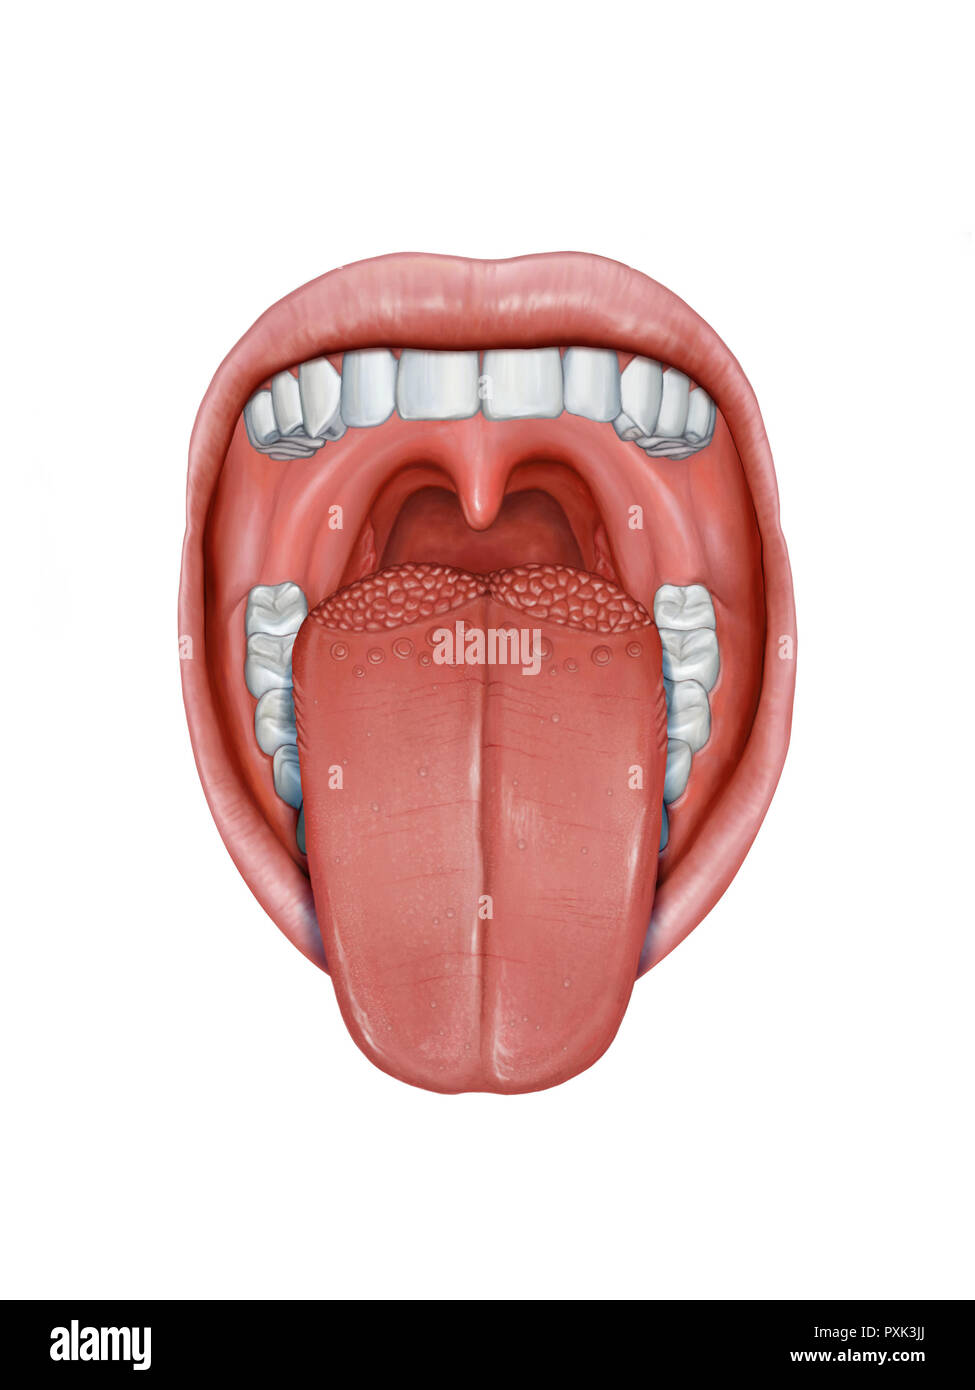 Mund mit Zunge heraus, seine unterschiedlichen Anatomie Teile mit Öffnen. Digitale Illustration. Stockfoto